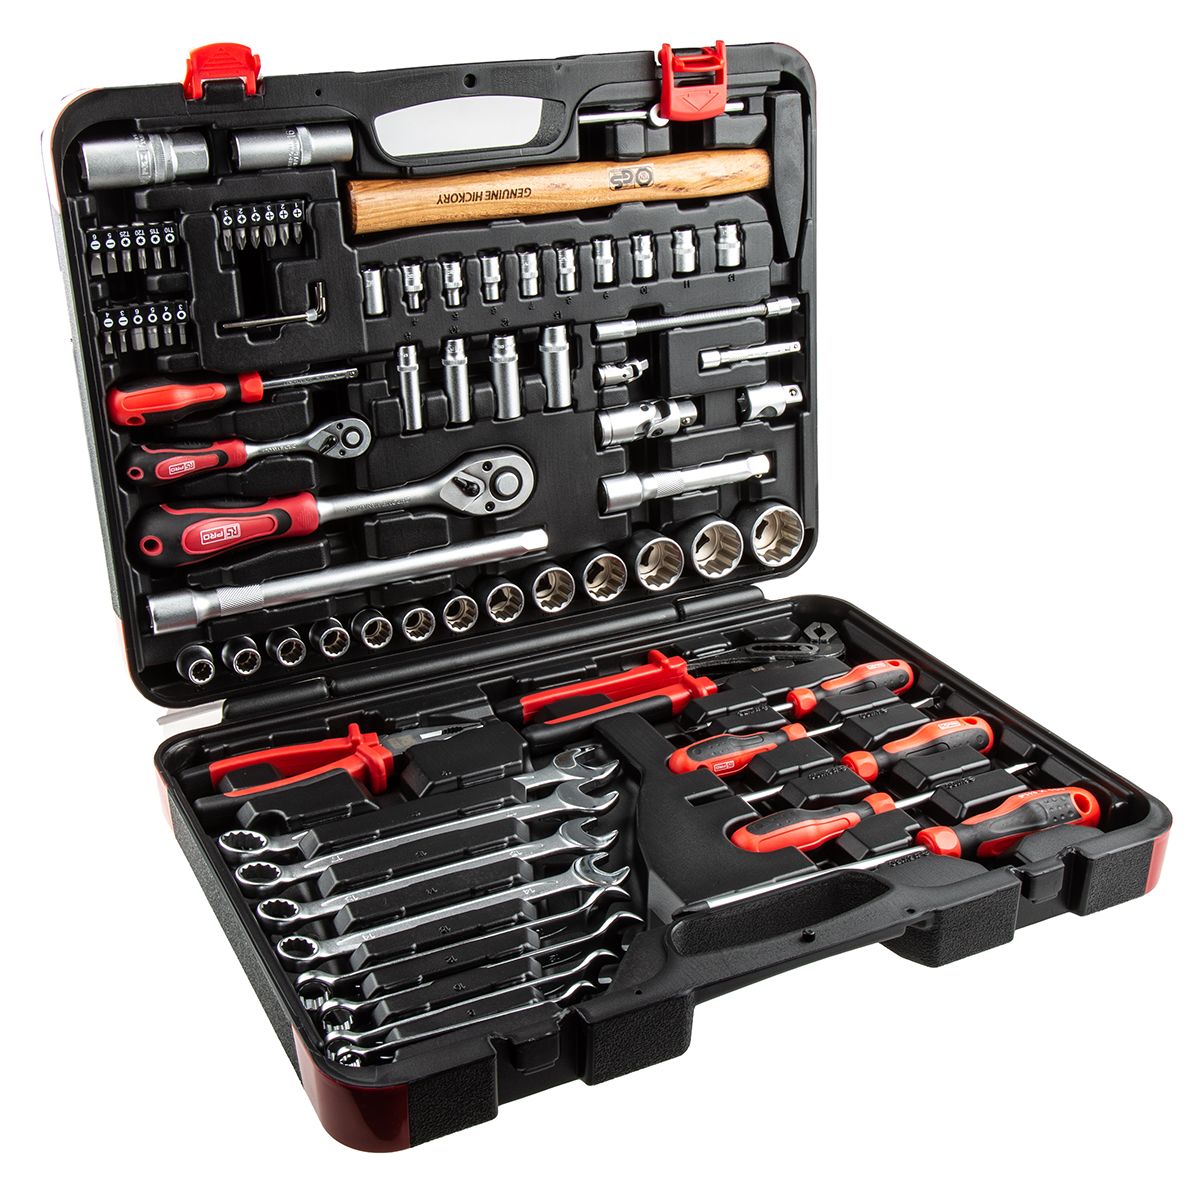 Kit de herramientas RS PRO, Maletín de 78 piezas para Mecánico, contiene Puntas, martillo, llaves hexagonales,